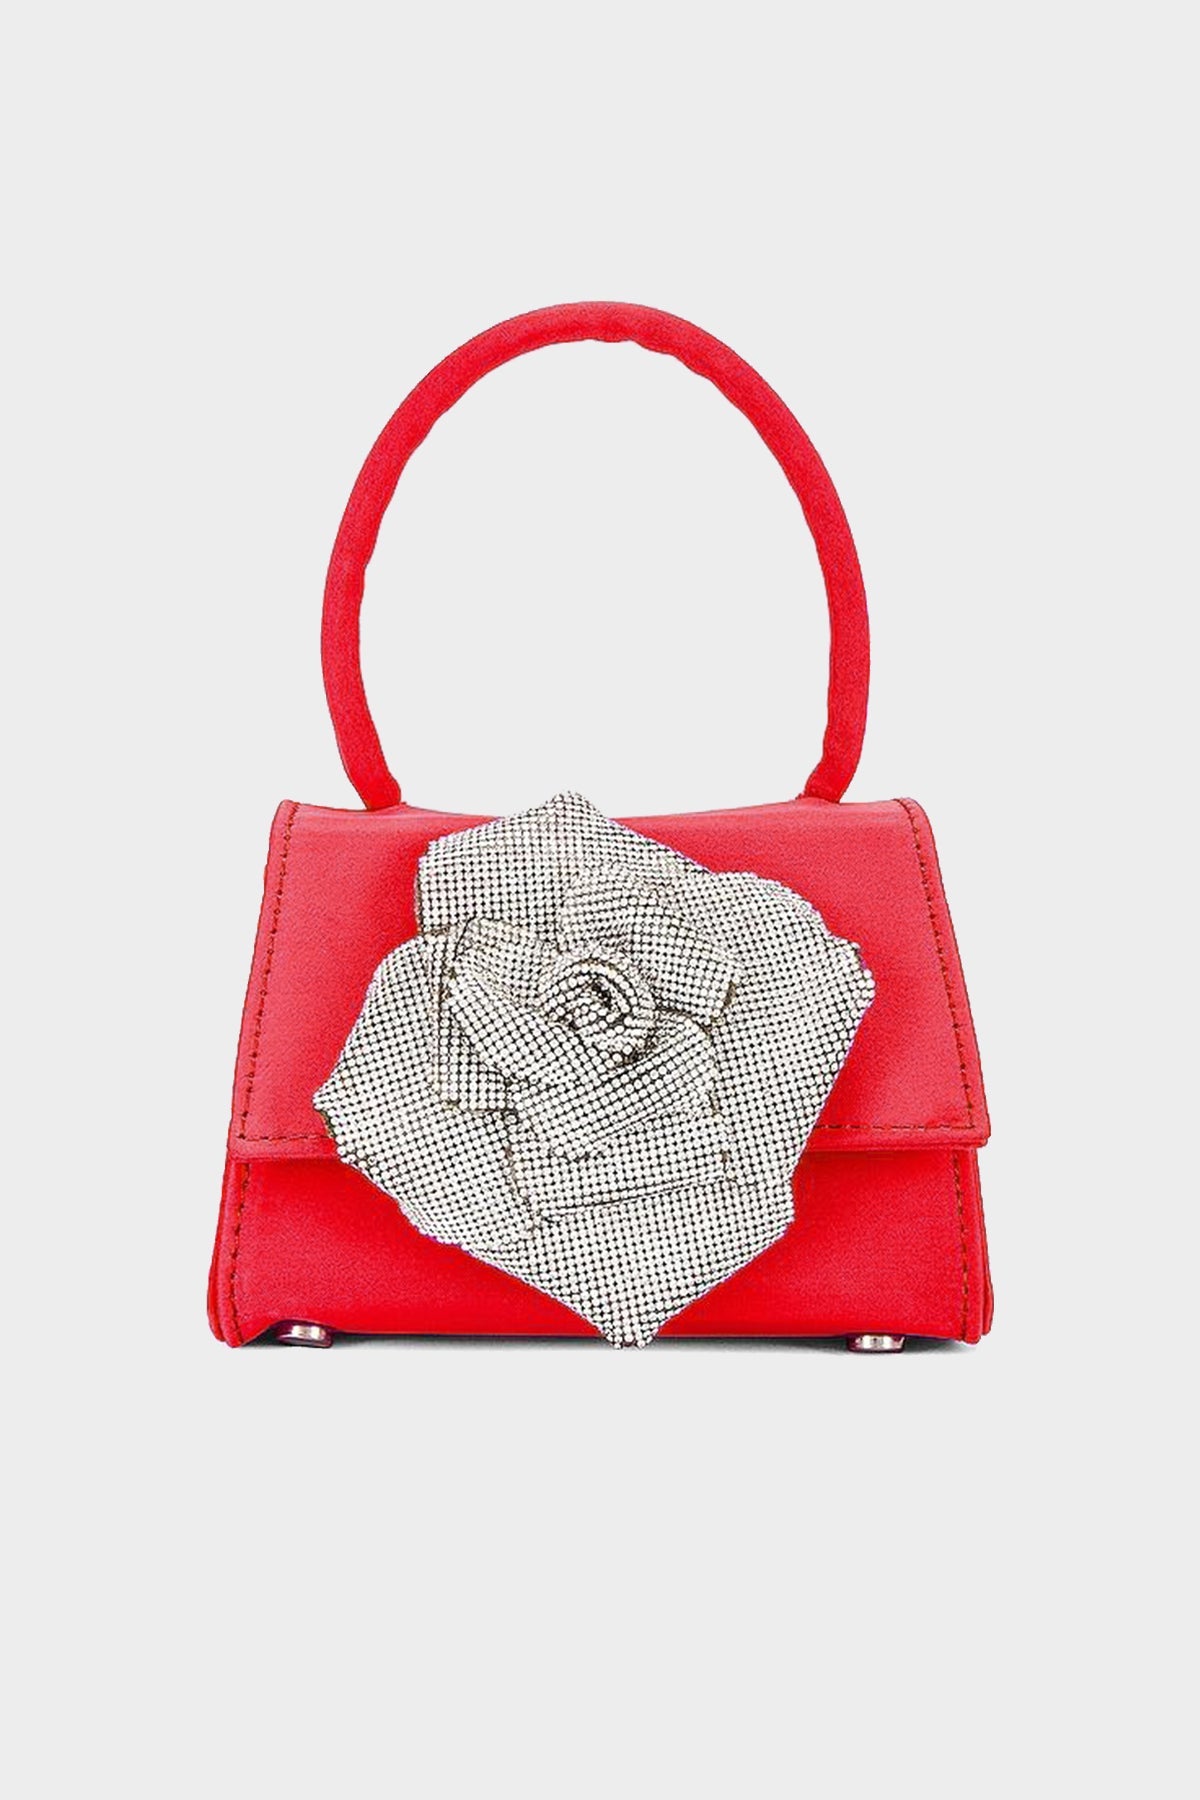 Crystal Rose Embellished Mini Bag in Red - shop-olivia.com